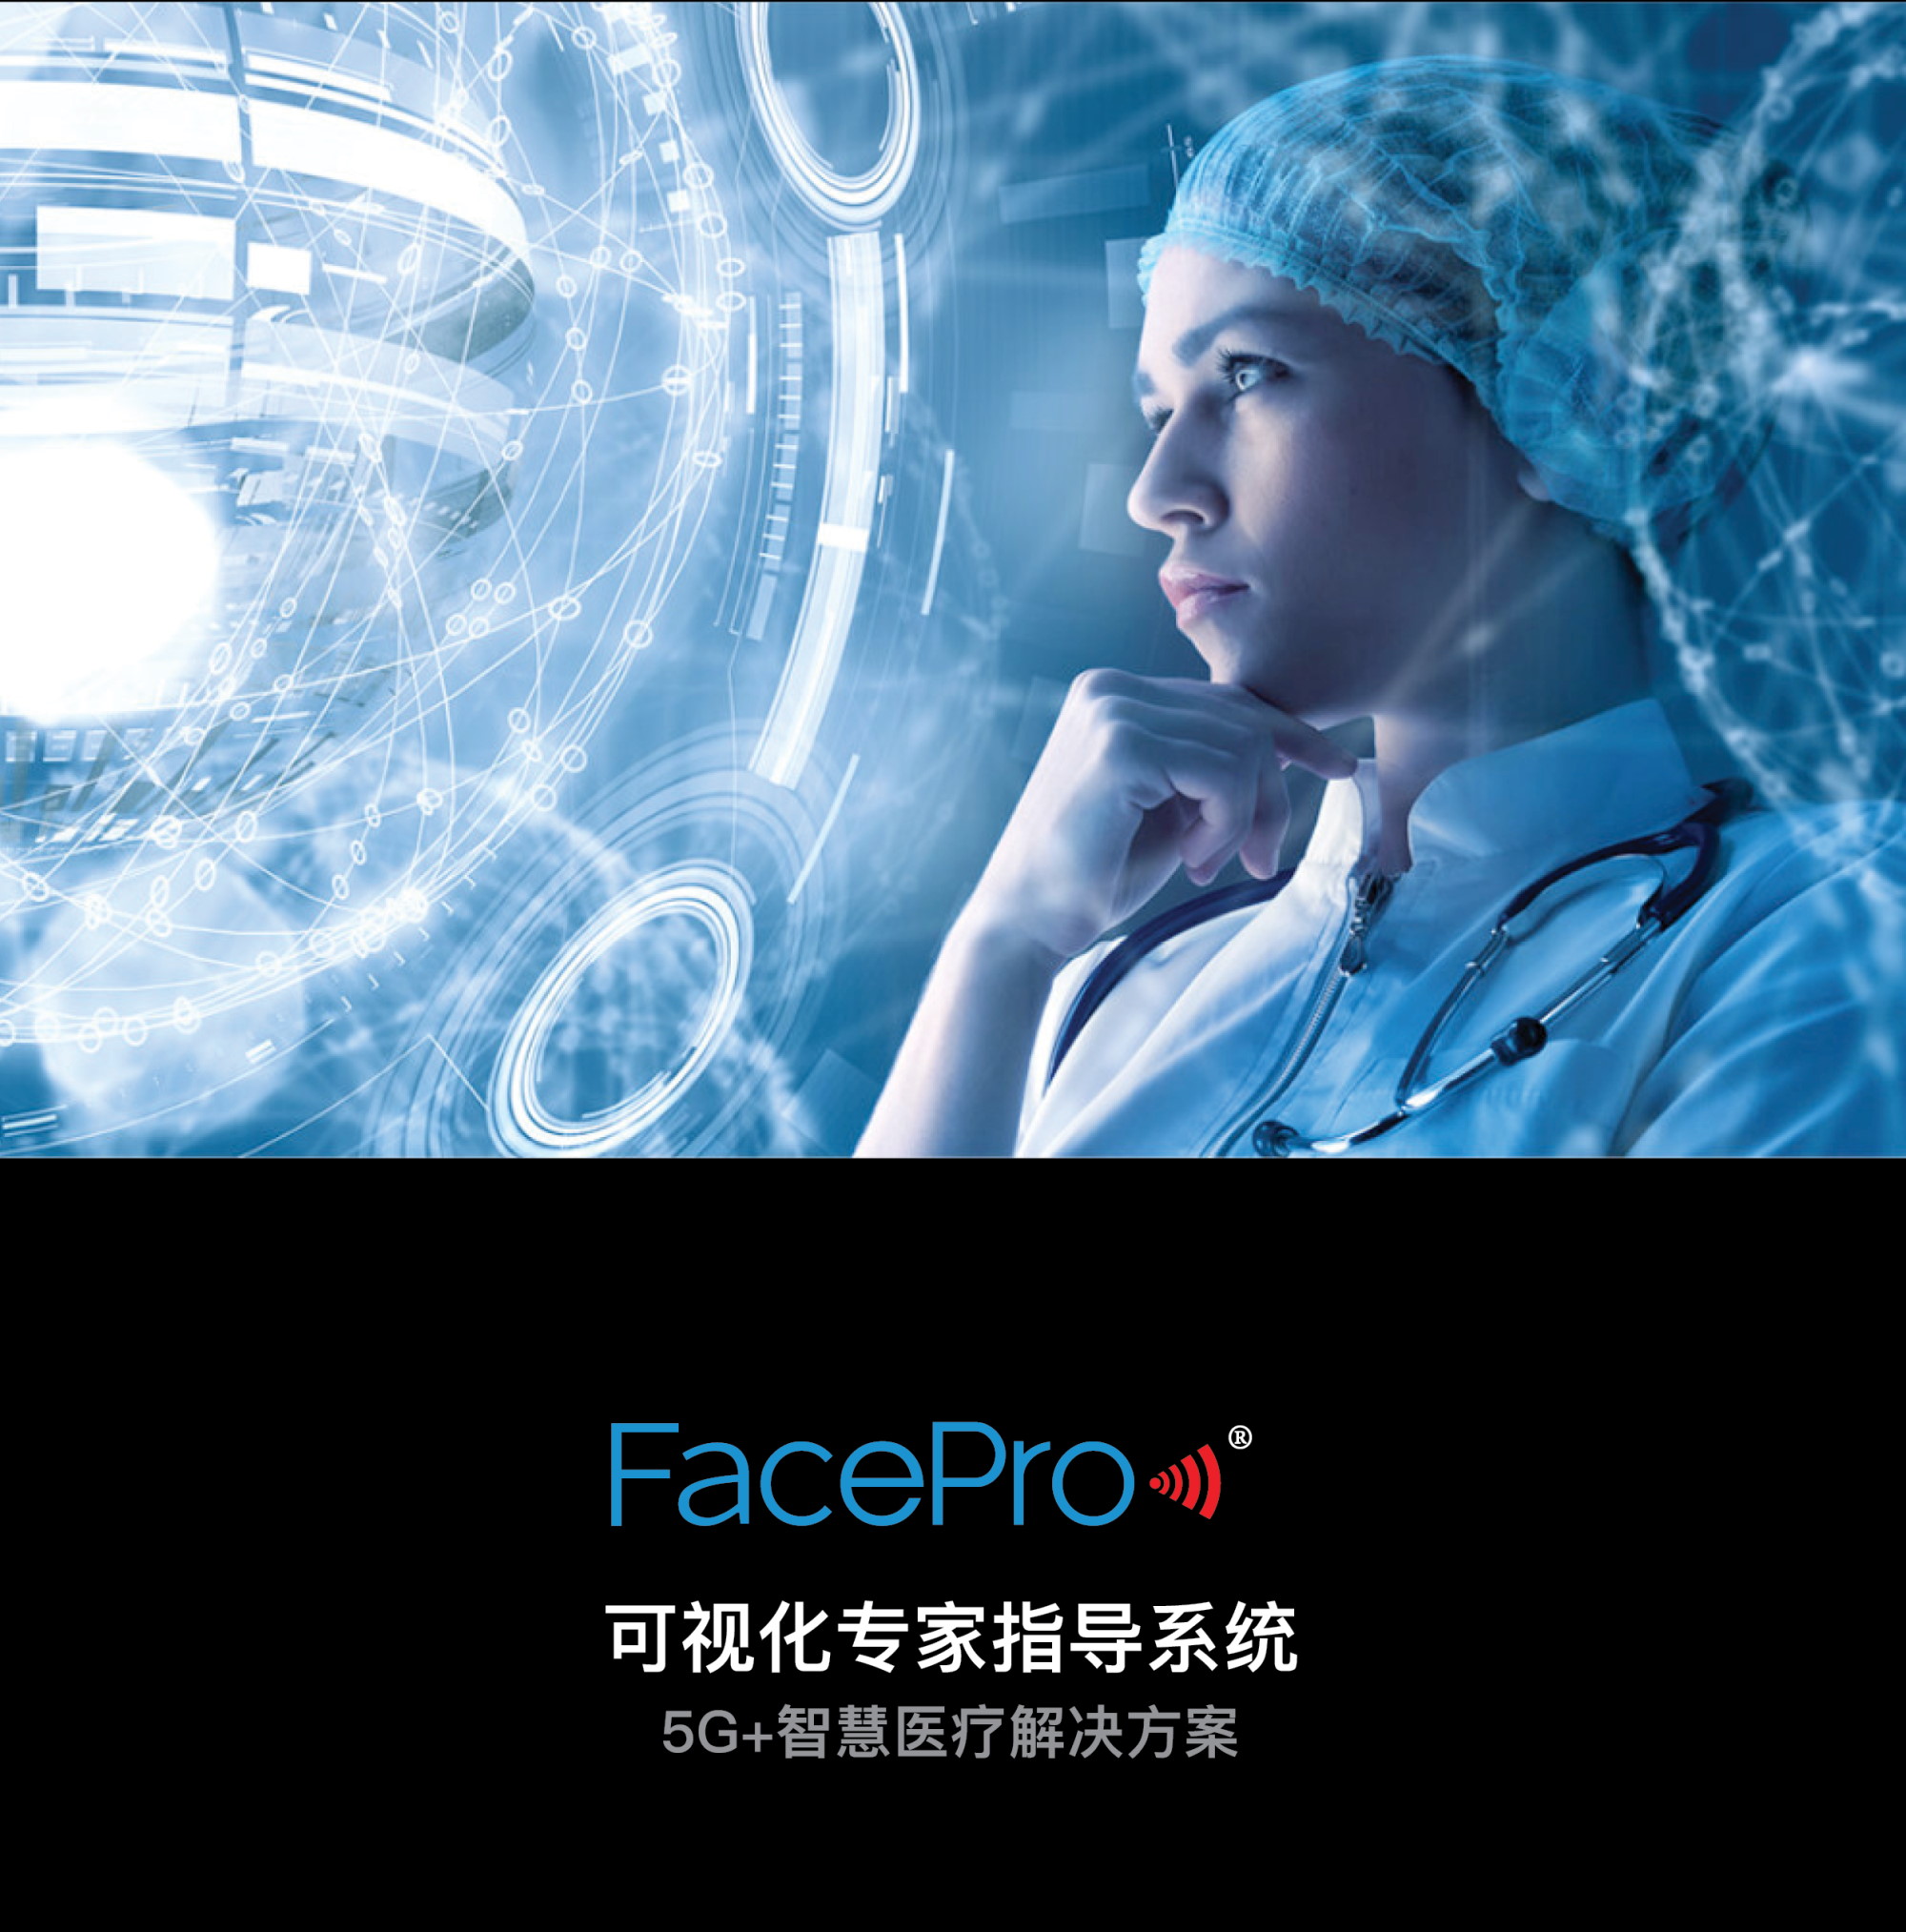 FacePro Xpert 远程医疗系统